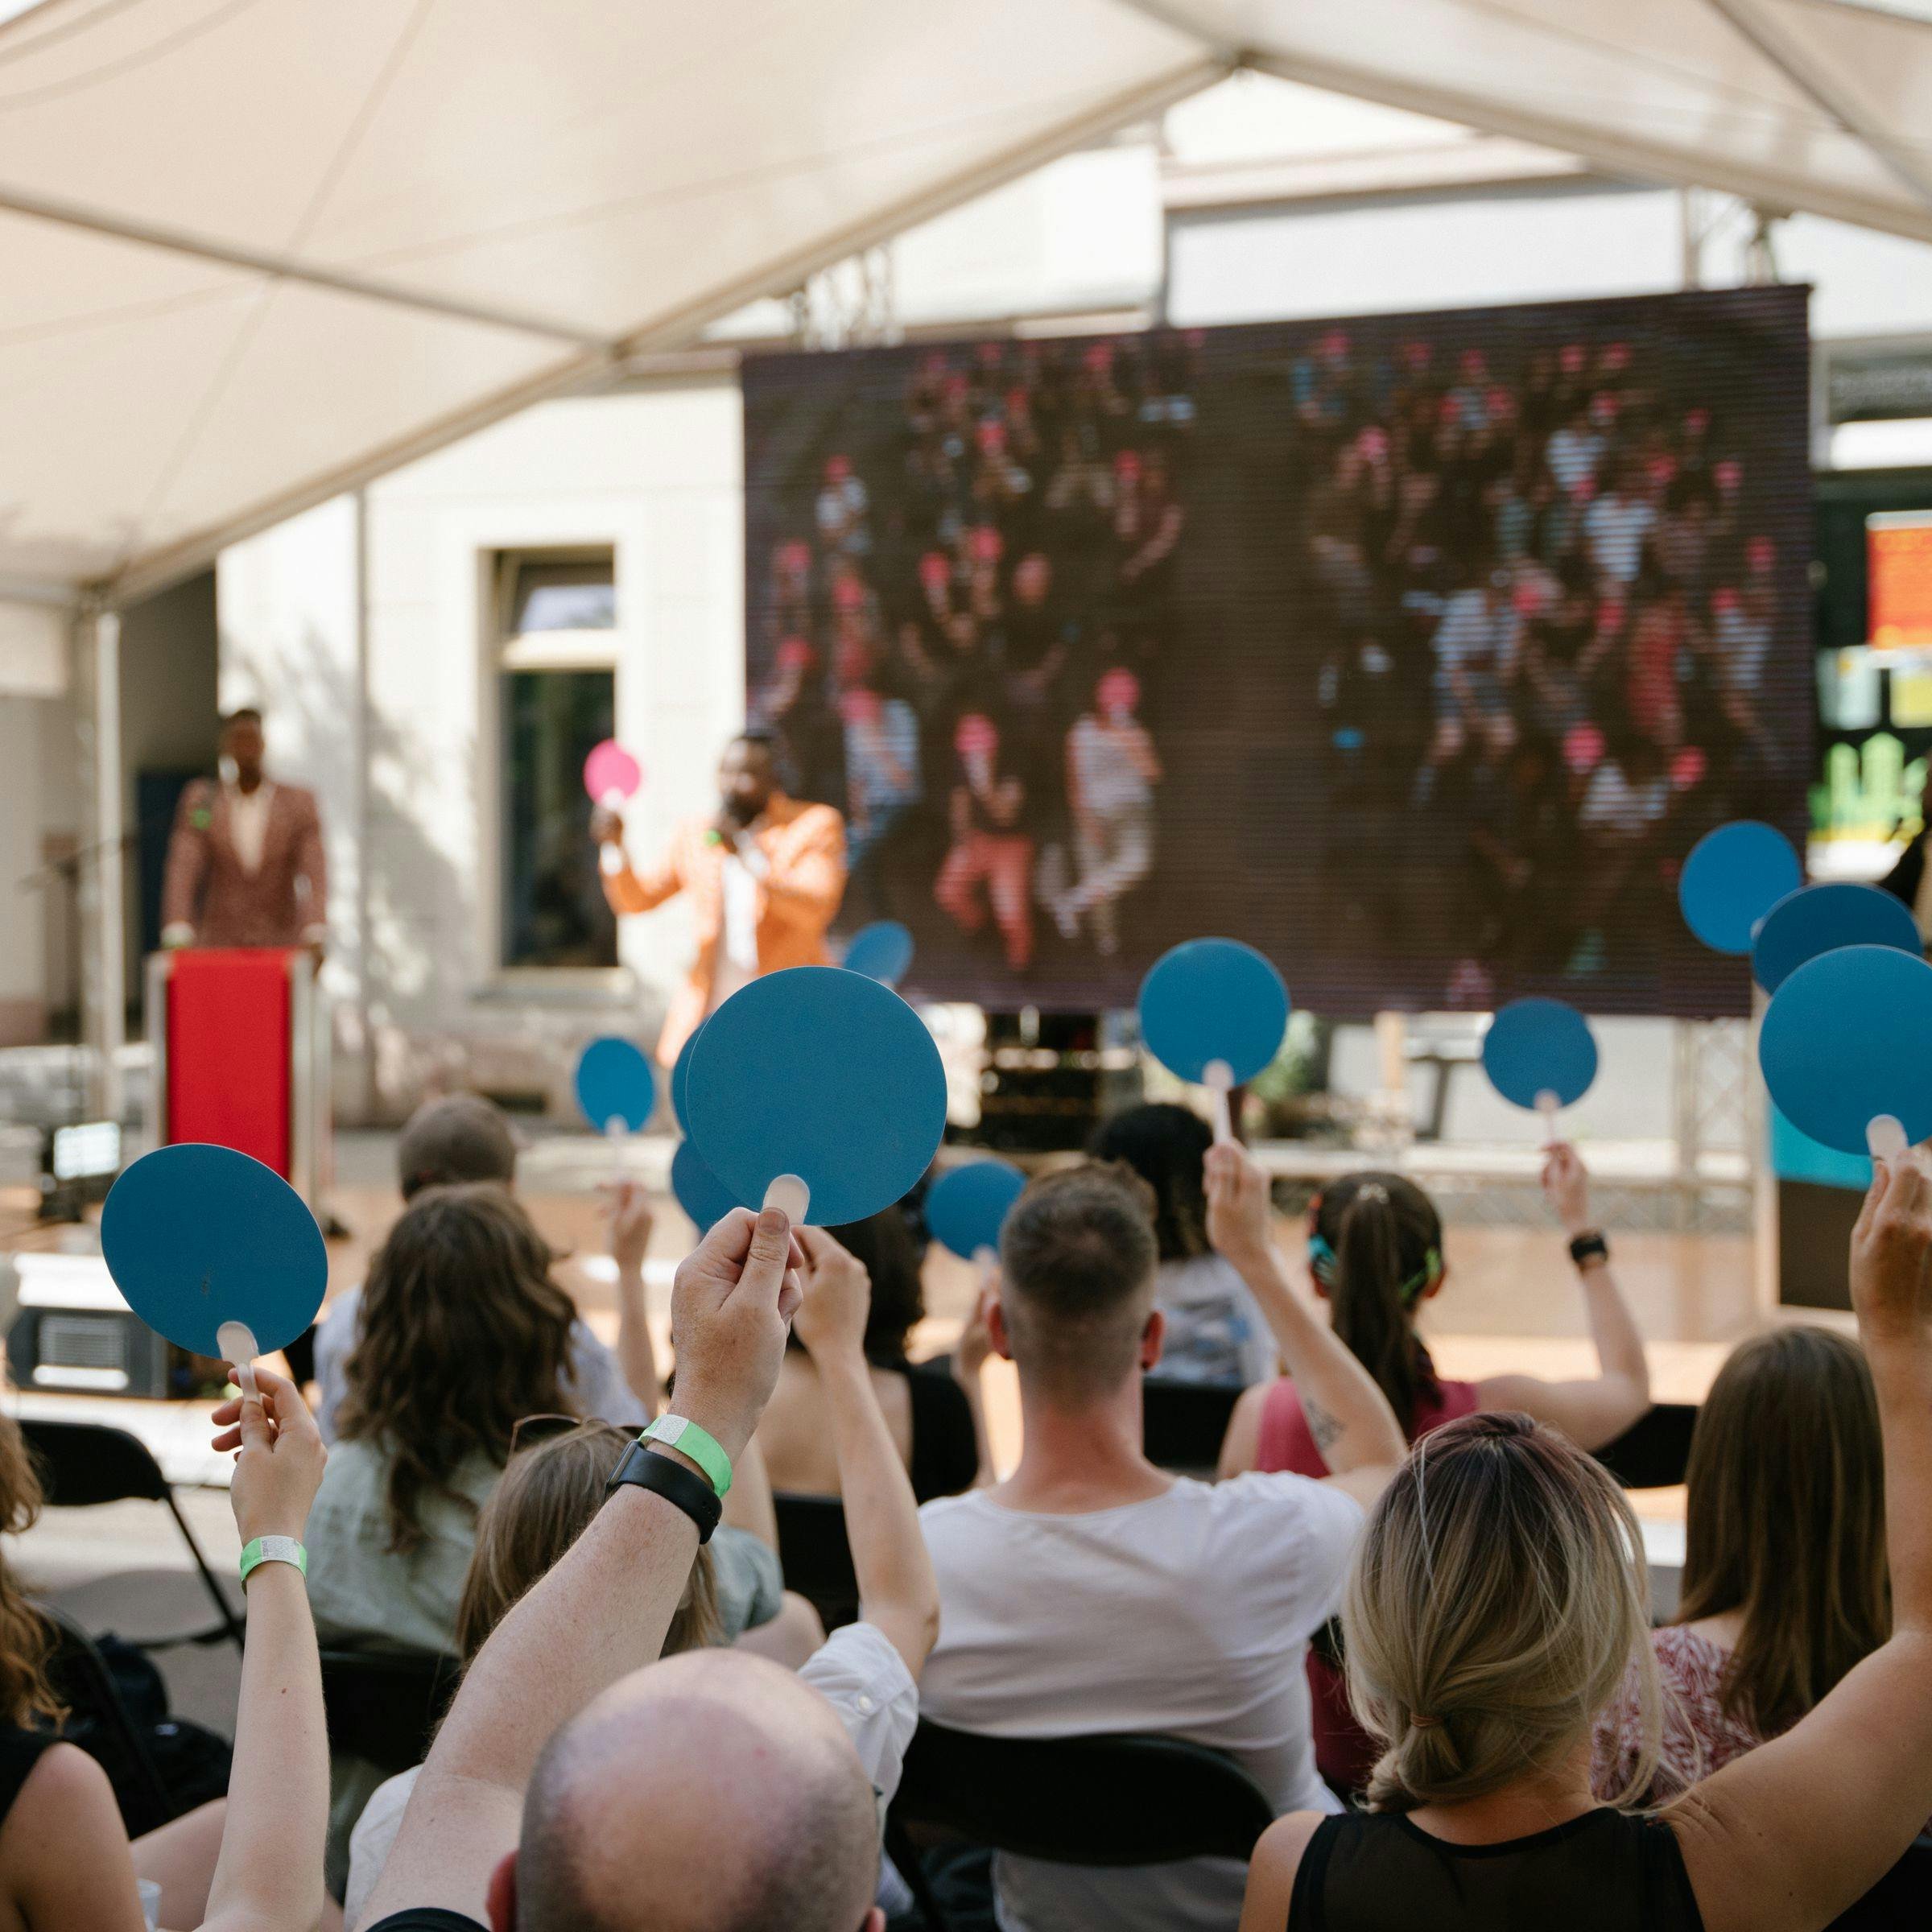 Bei einem Diskussionsformat im Freien wird das Publikum von hinten dabei fotografiert, wie sie blaue Karten nach oben halten. Im Hintergrund sieht man die Bühne mit den Moderatoren.